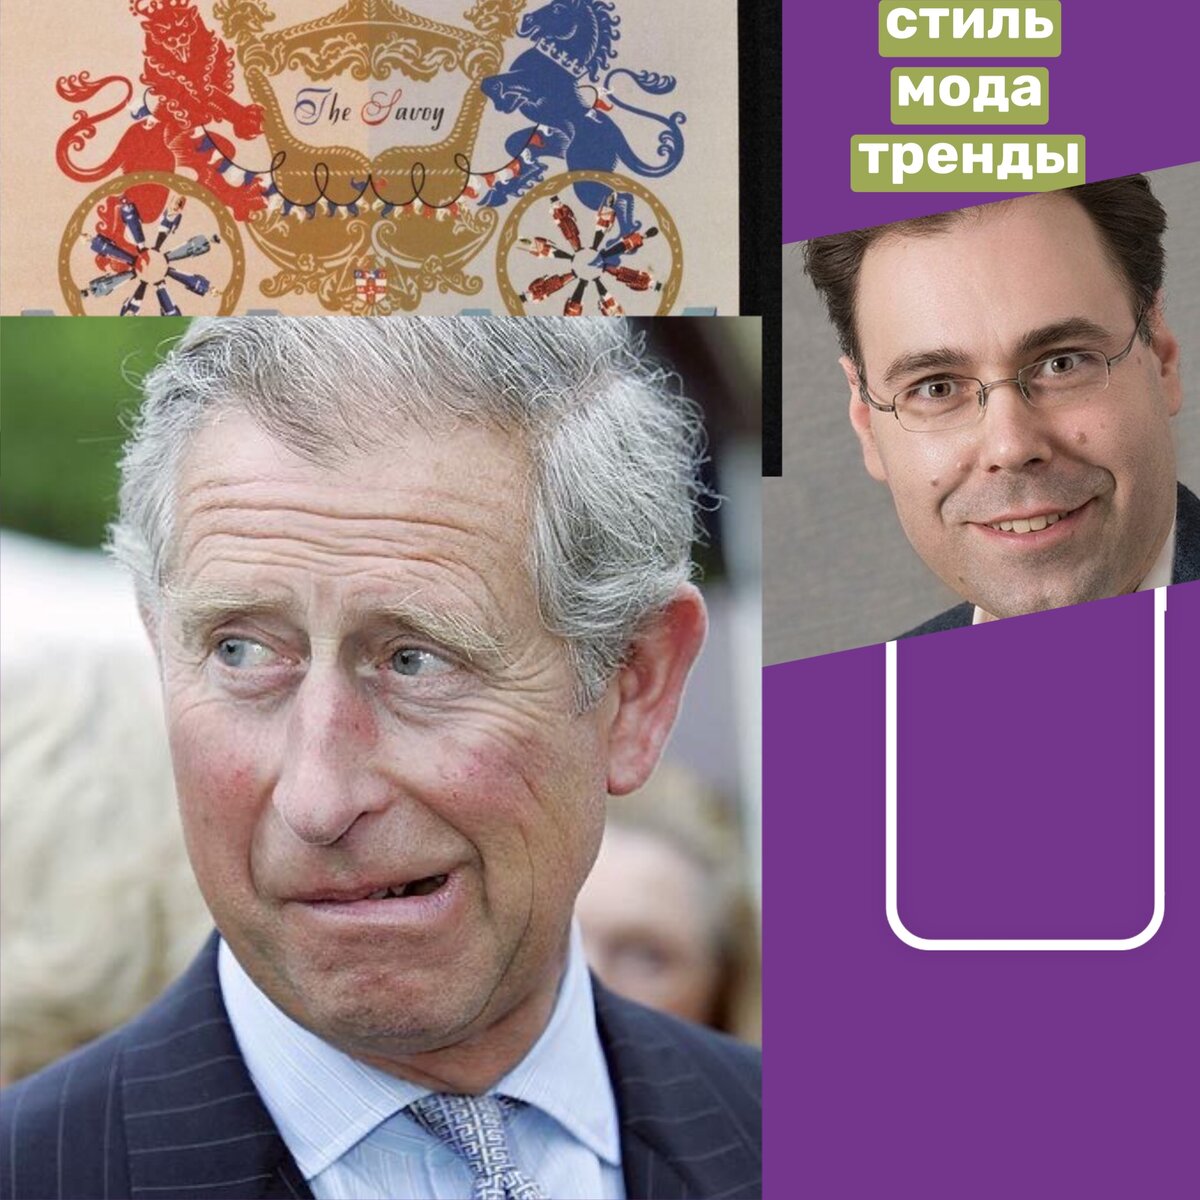 Чарльз боится свержения монархии?